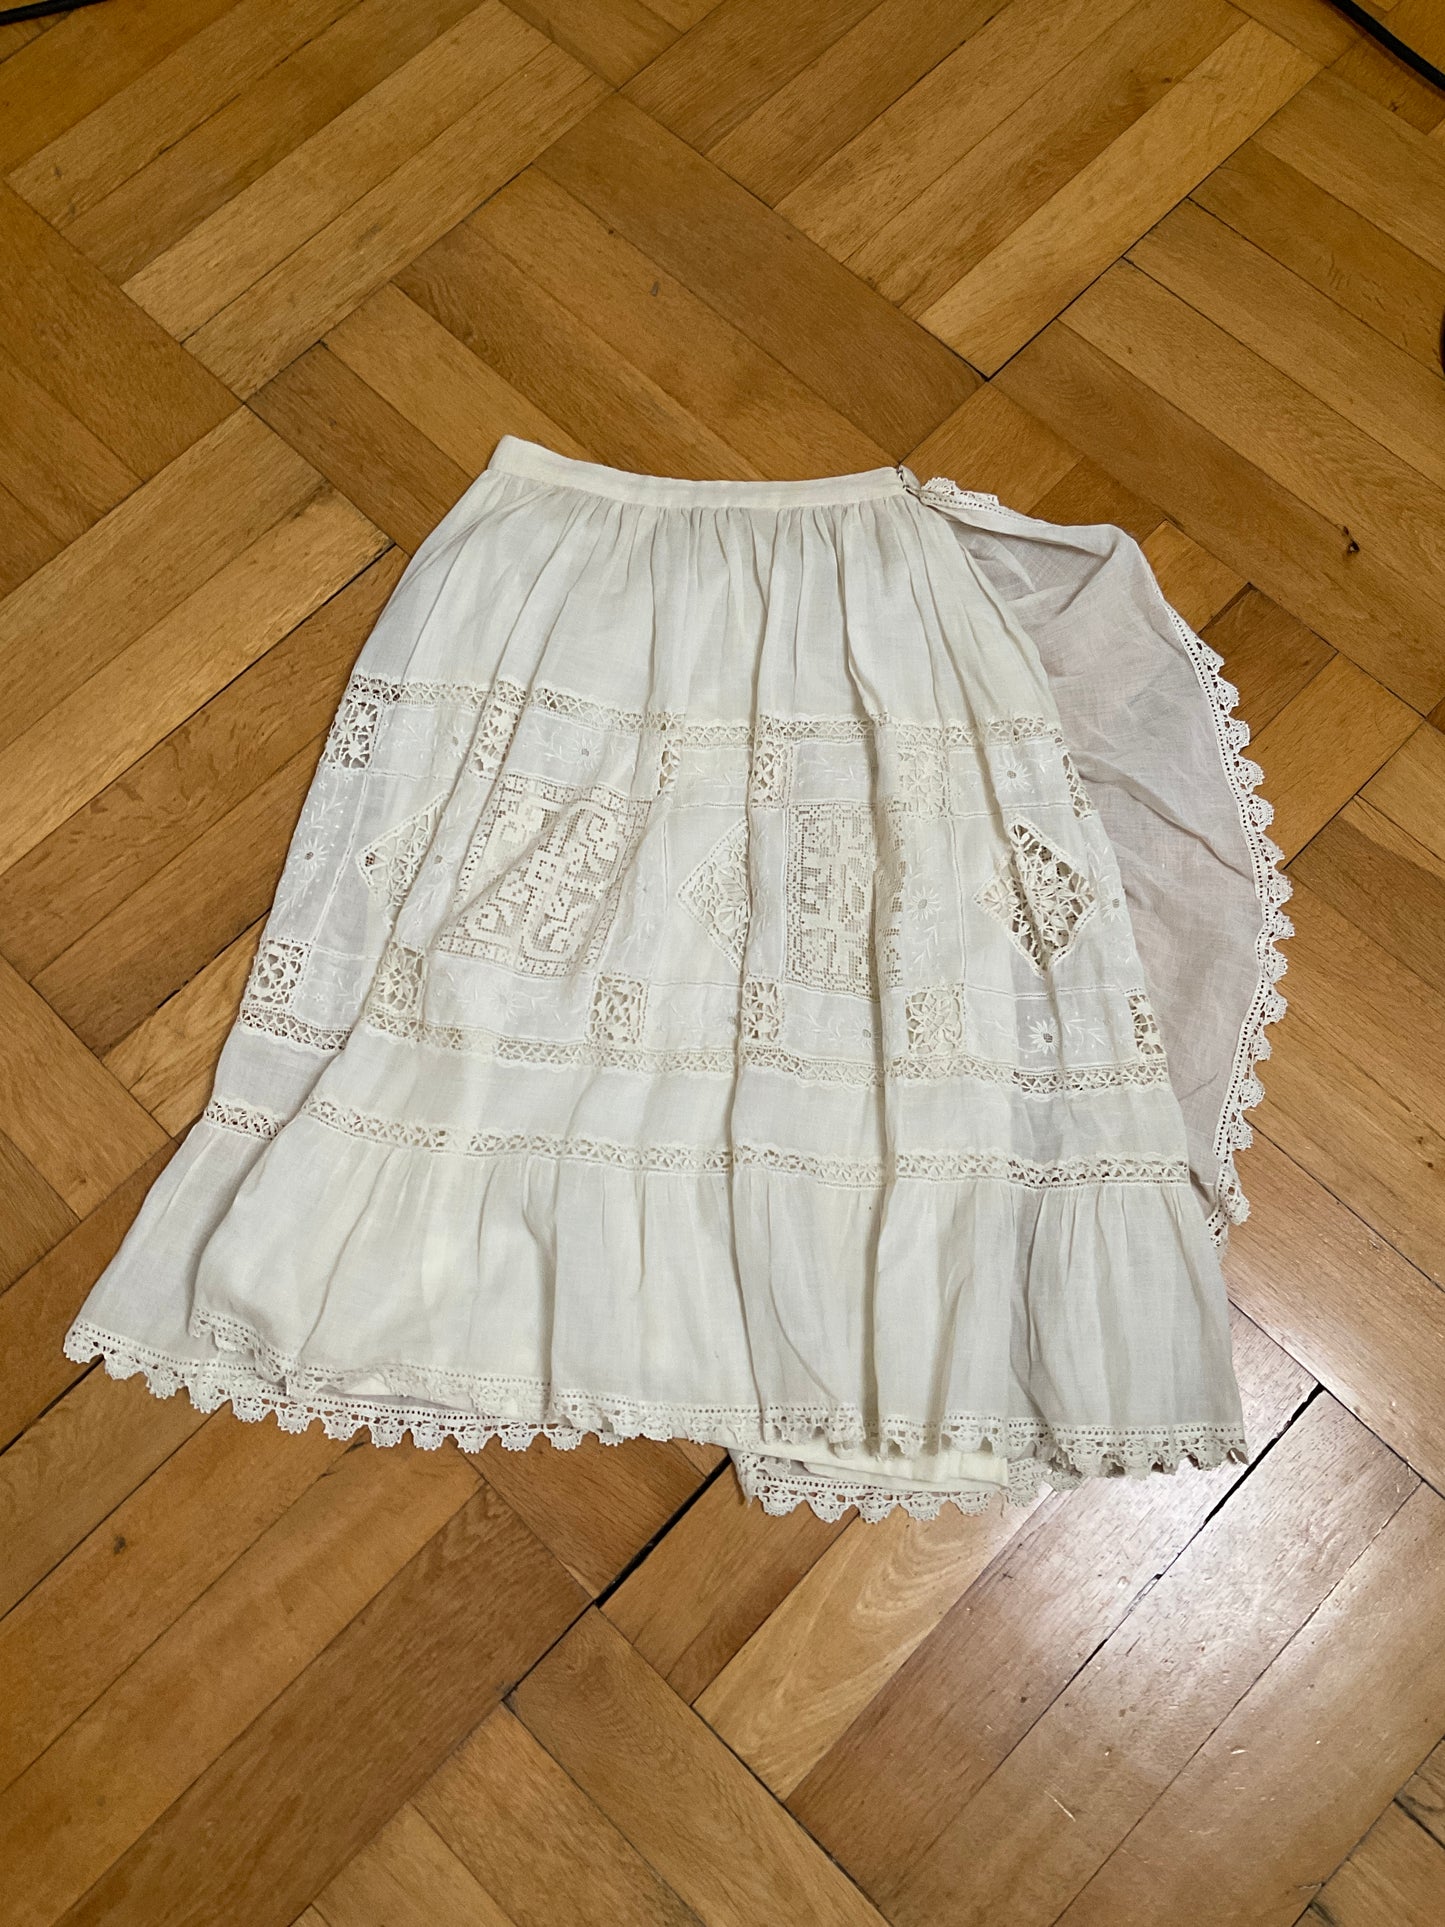 60s Italian skirt